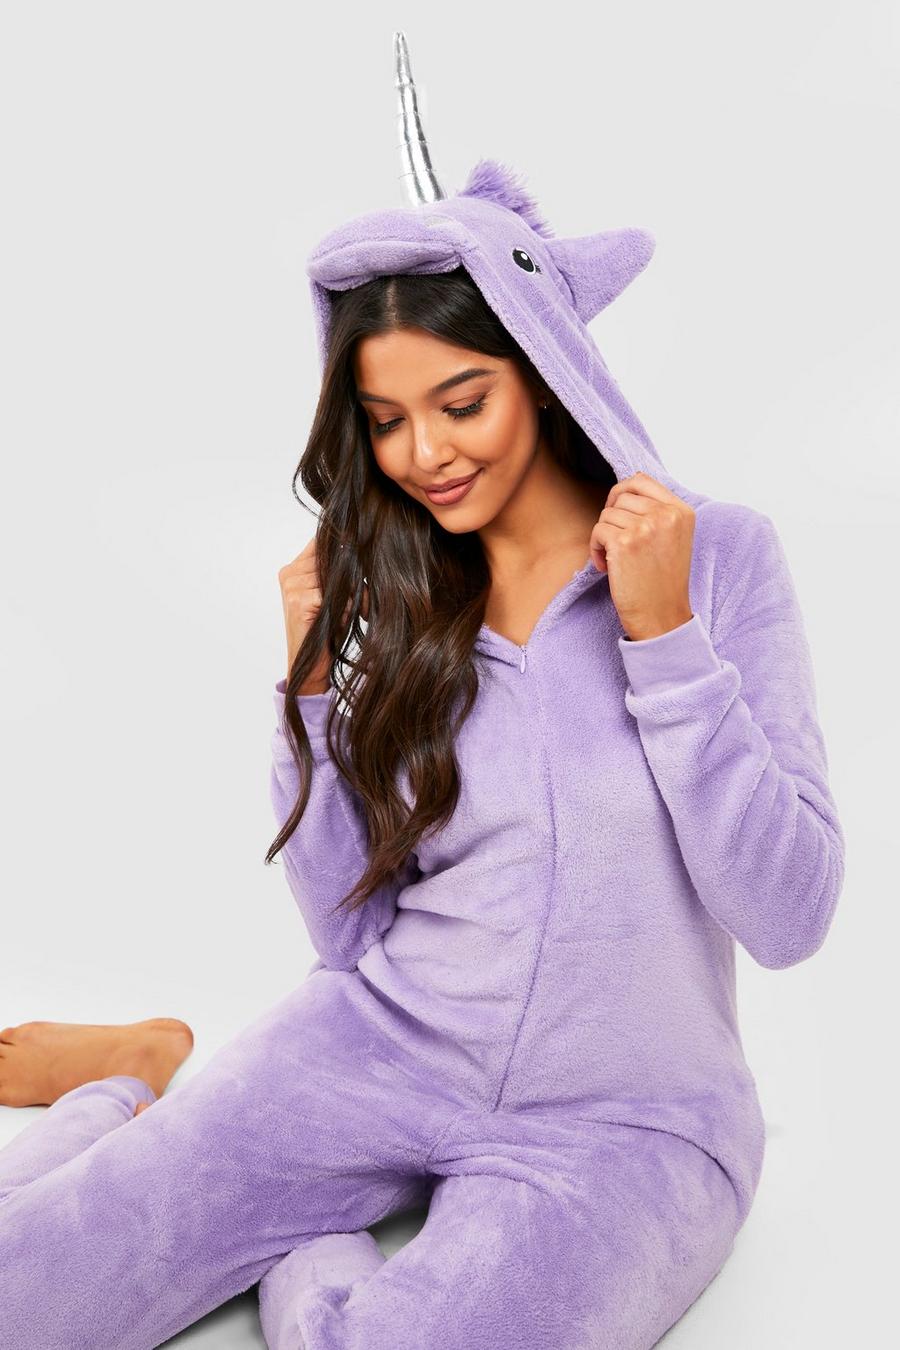 eficaz Canciones infantiles calor Pijama enterizo de borreguito con forma de unicornio | boohoo